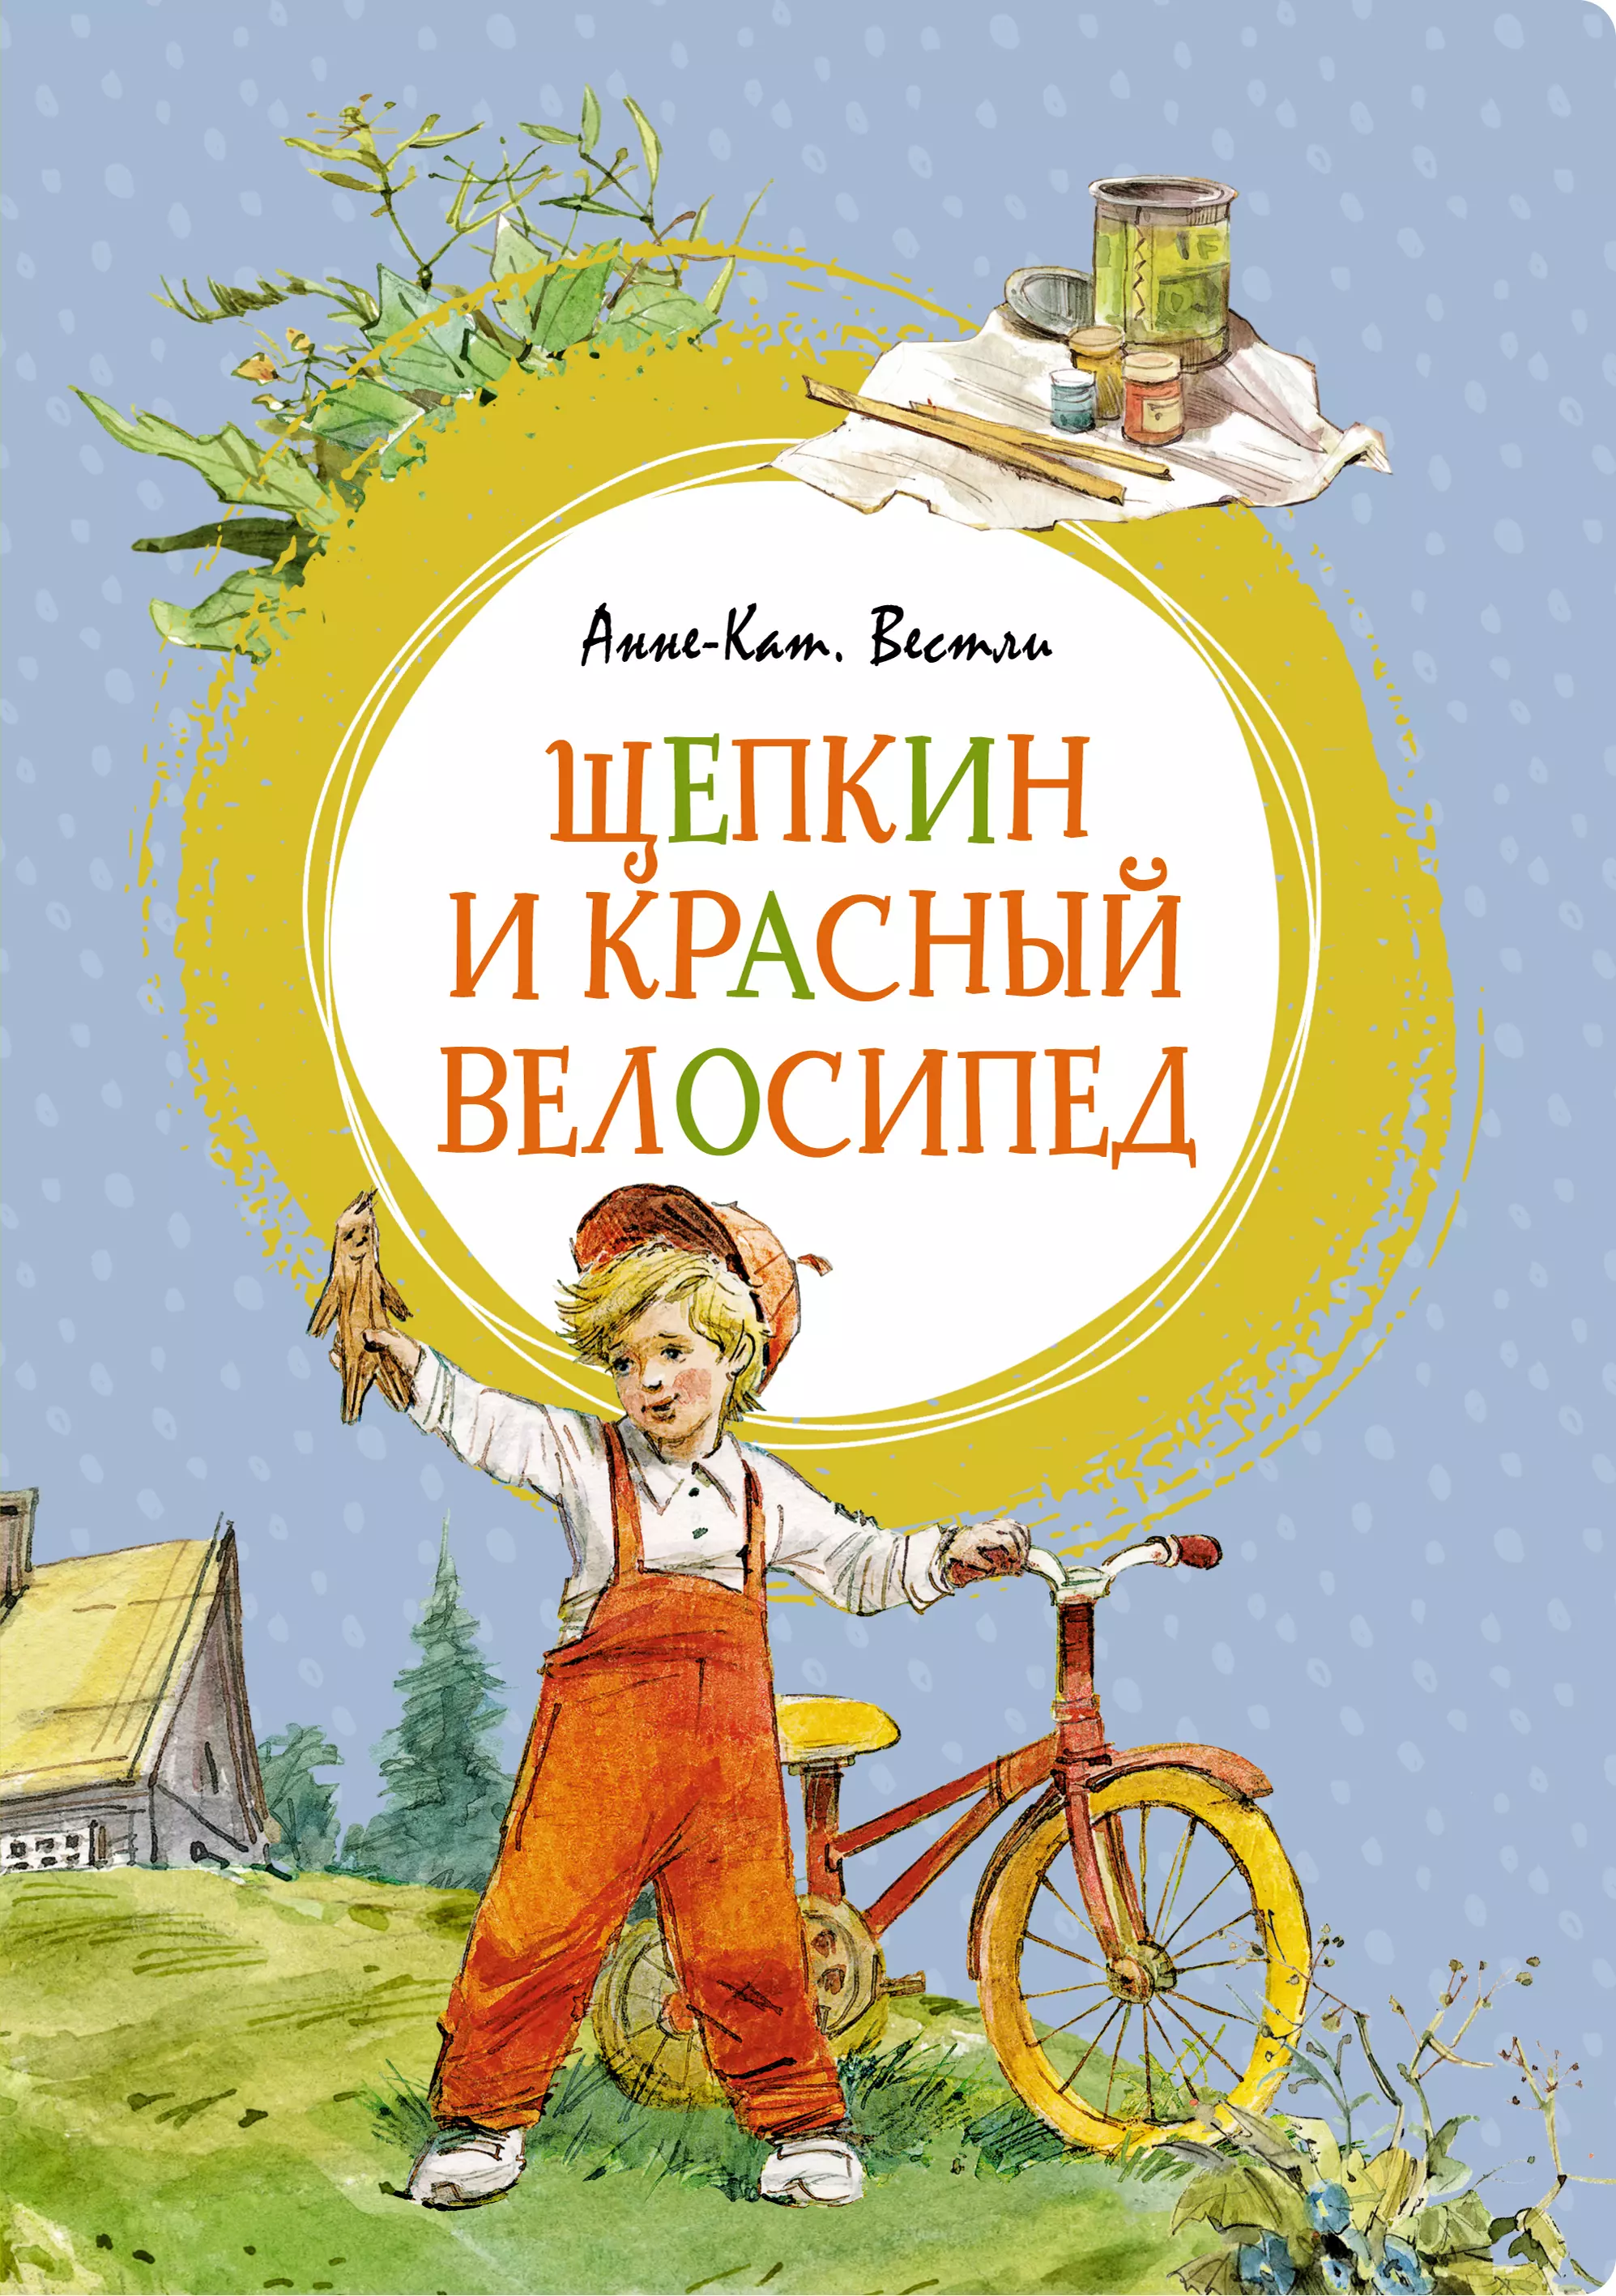 Вестли Анне-Катарина - Щепкин и красный велосипед. Повесть